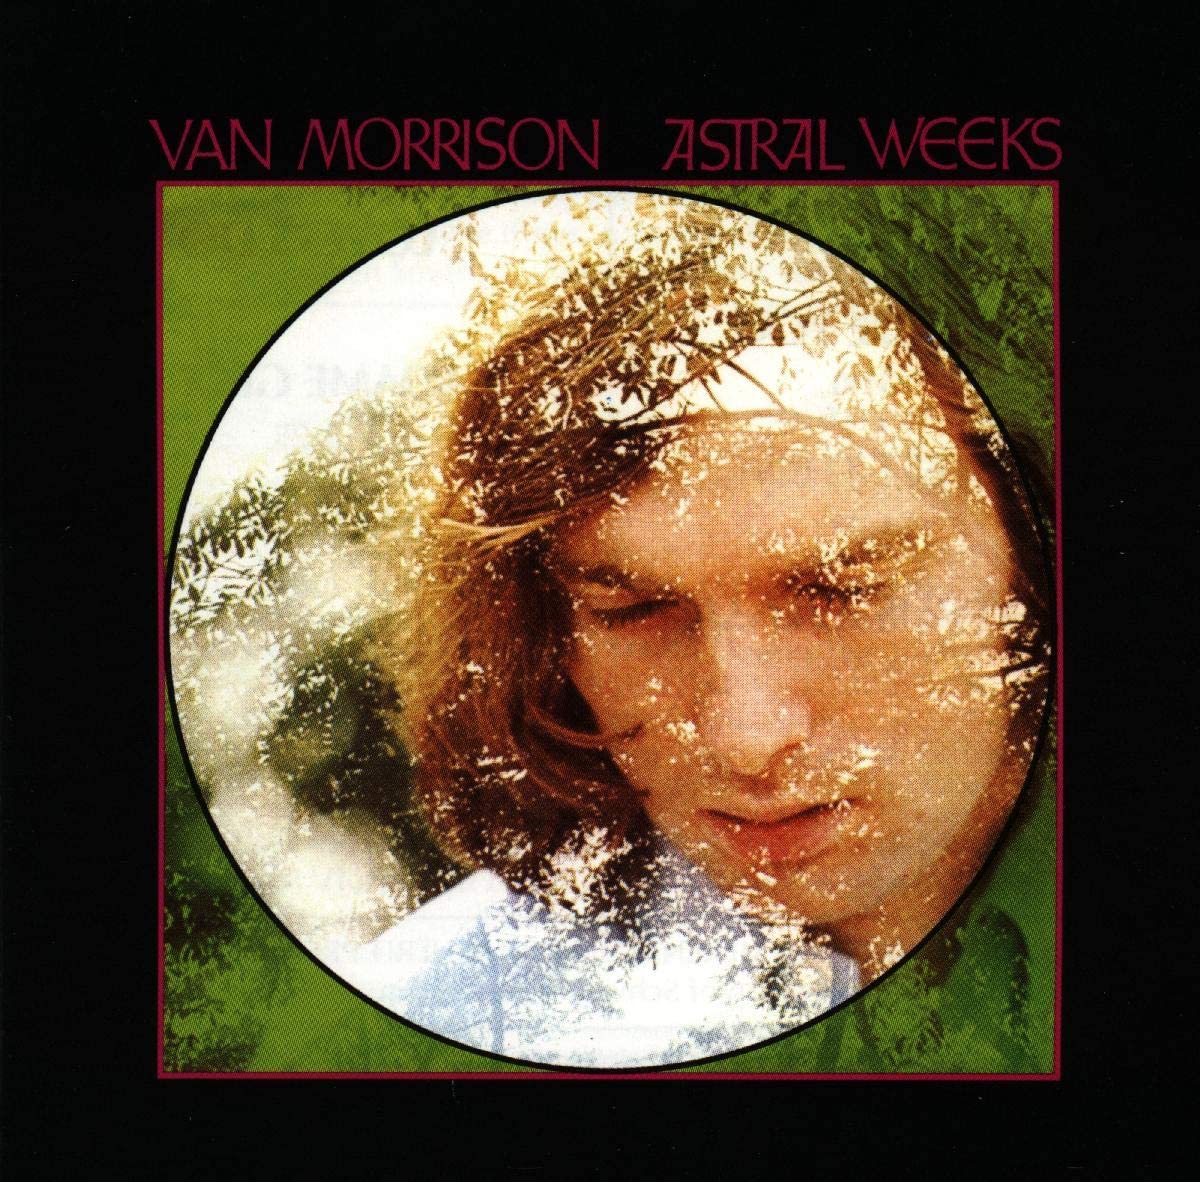 USED CD - Van Morrison – Astral Weeks